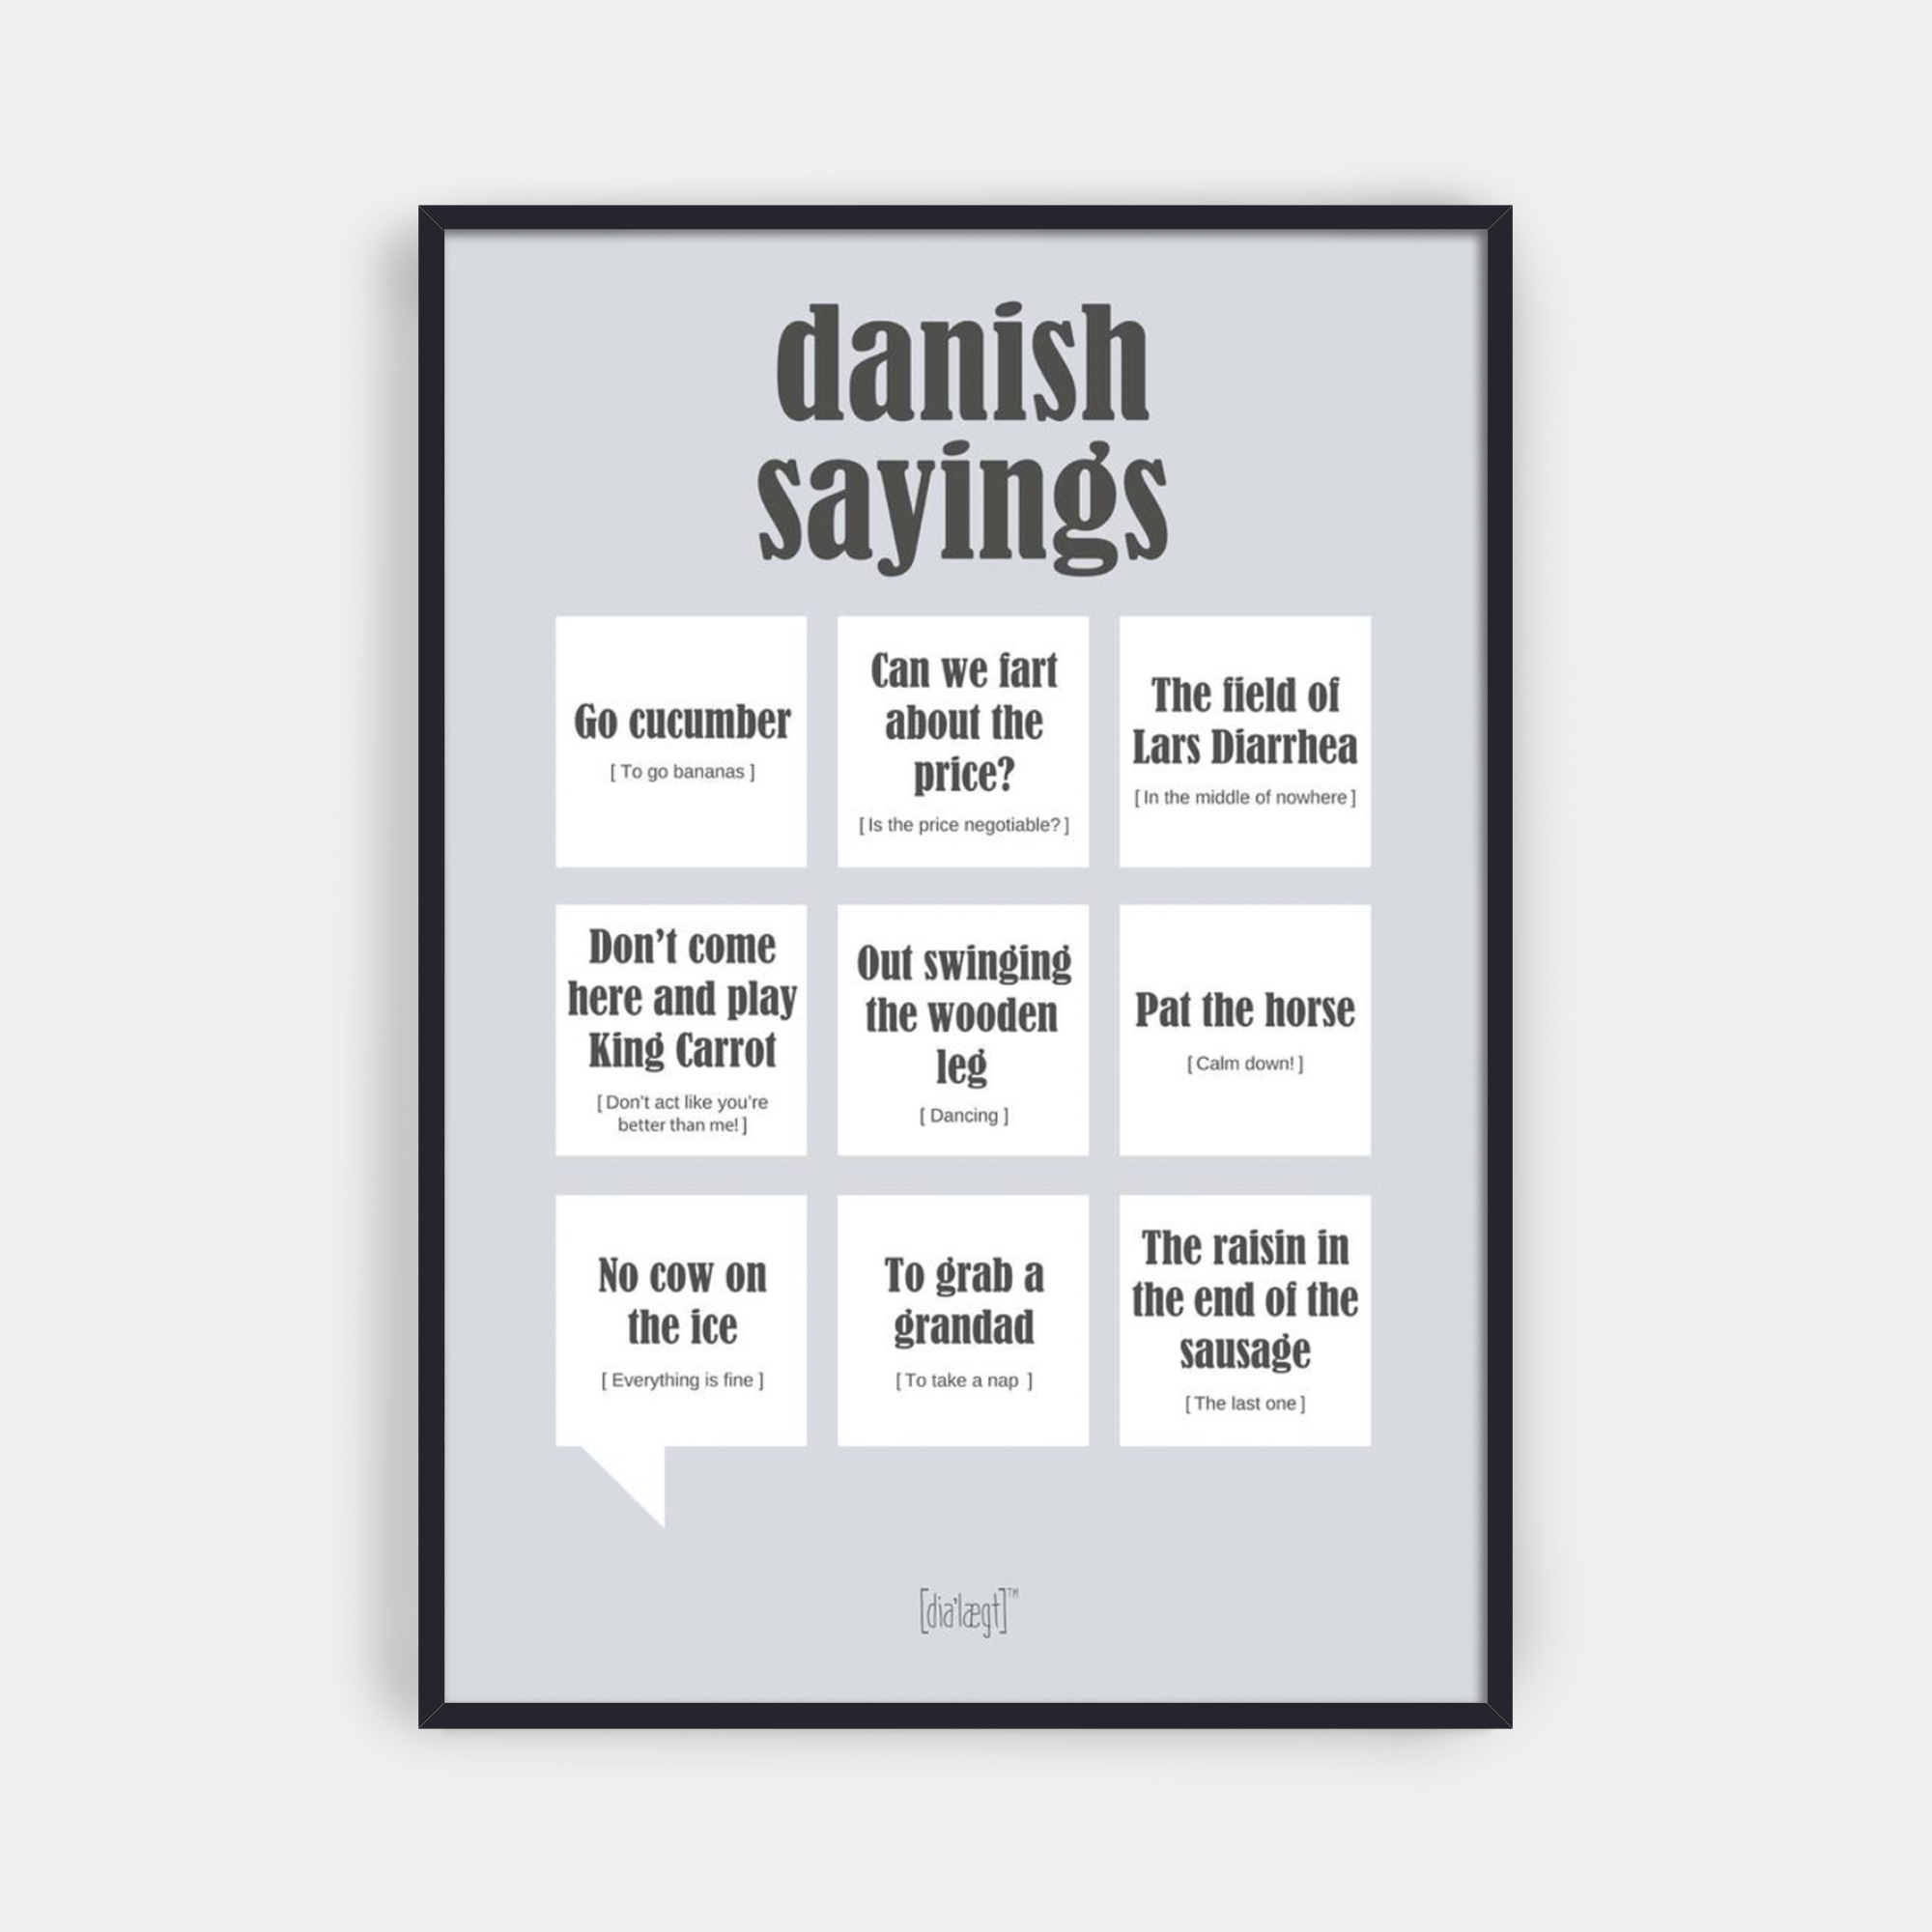 Se Danish Sayings hos Picment.dk